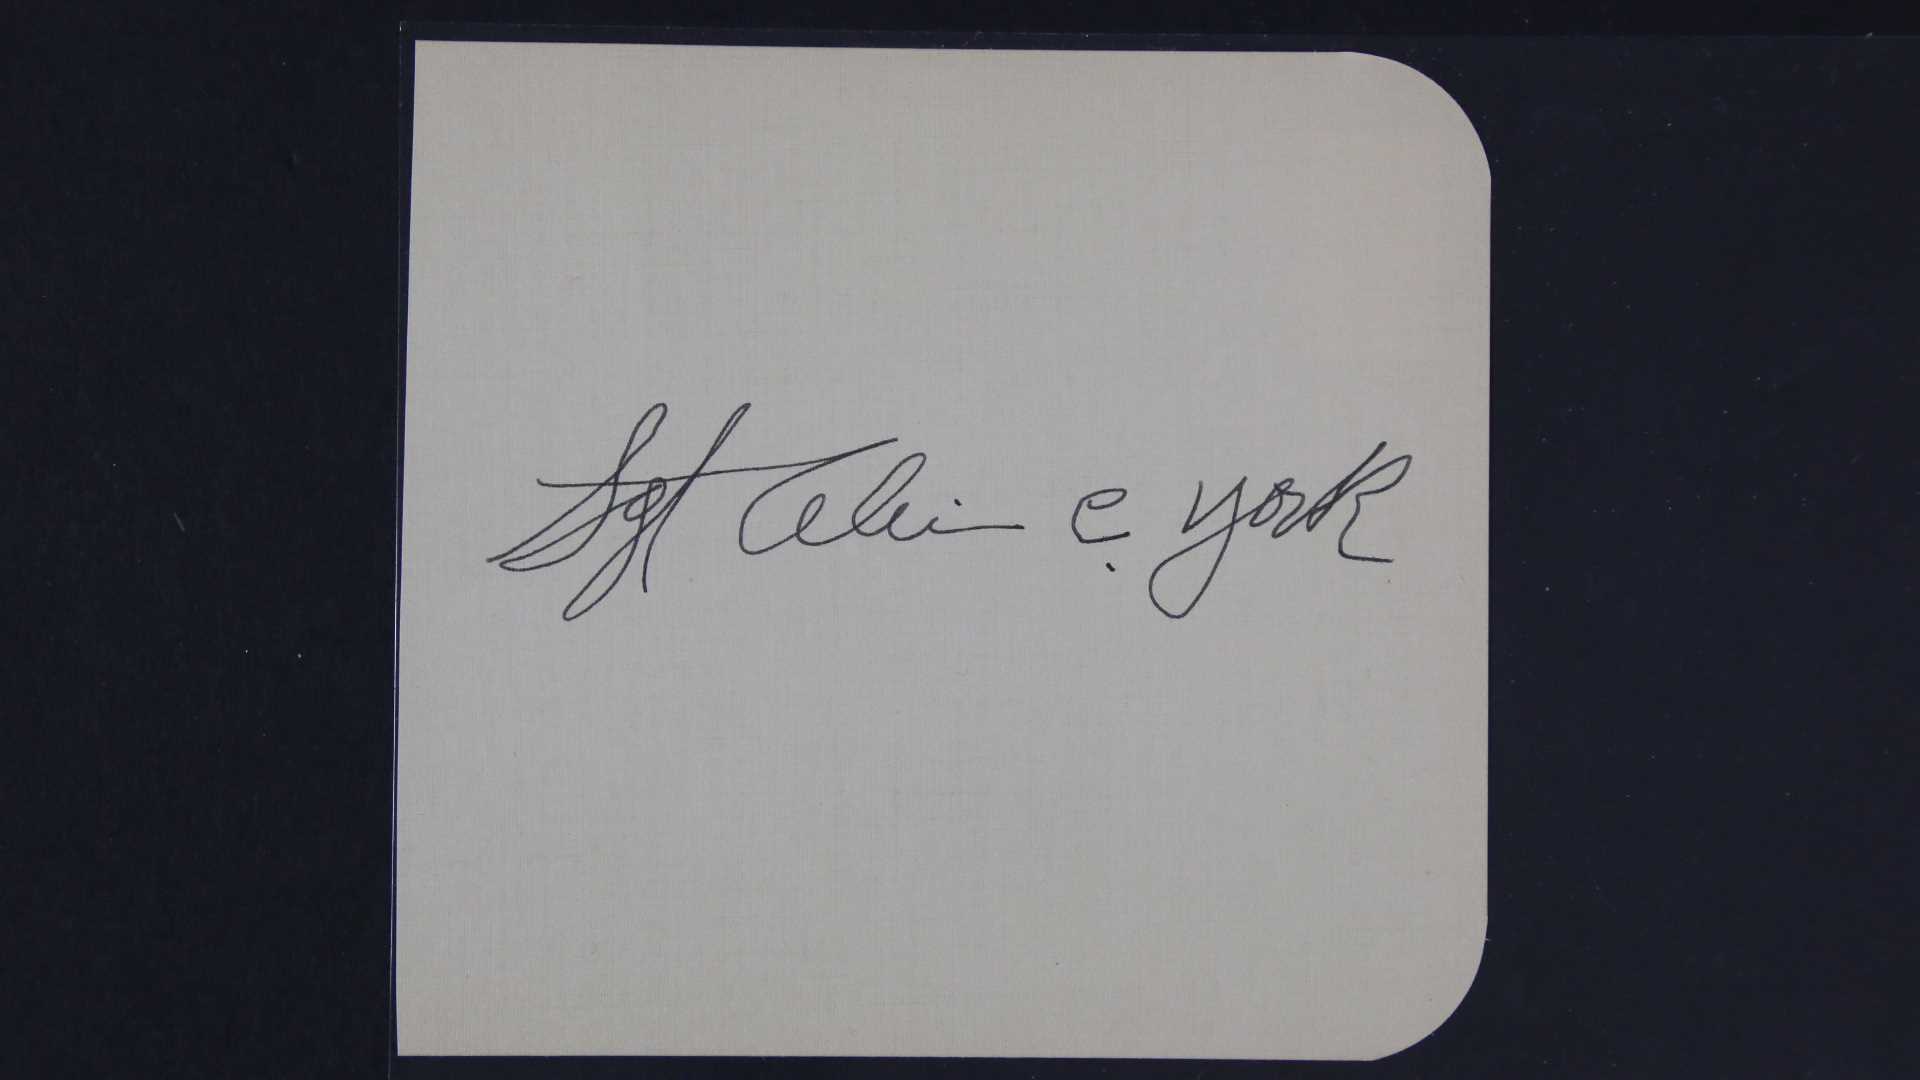 Sgt. Alvin C. York (d. 1964) Autographed Vintage Signature Page